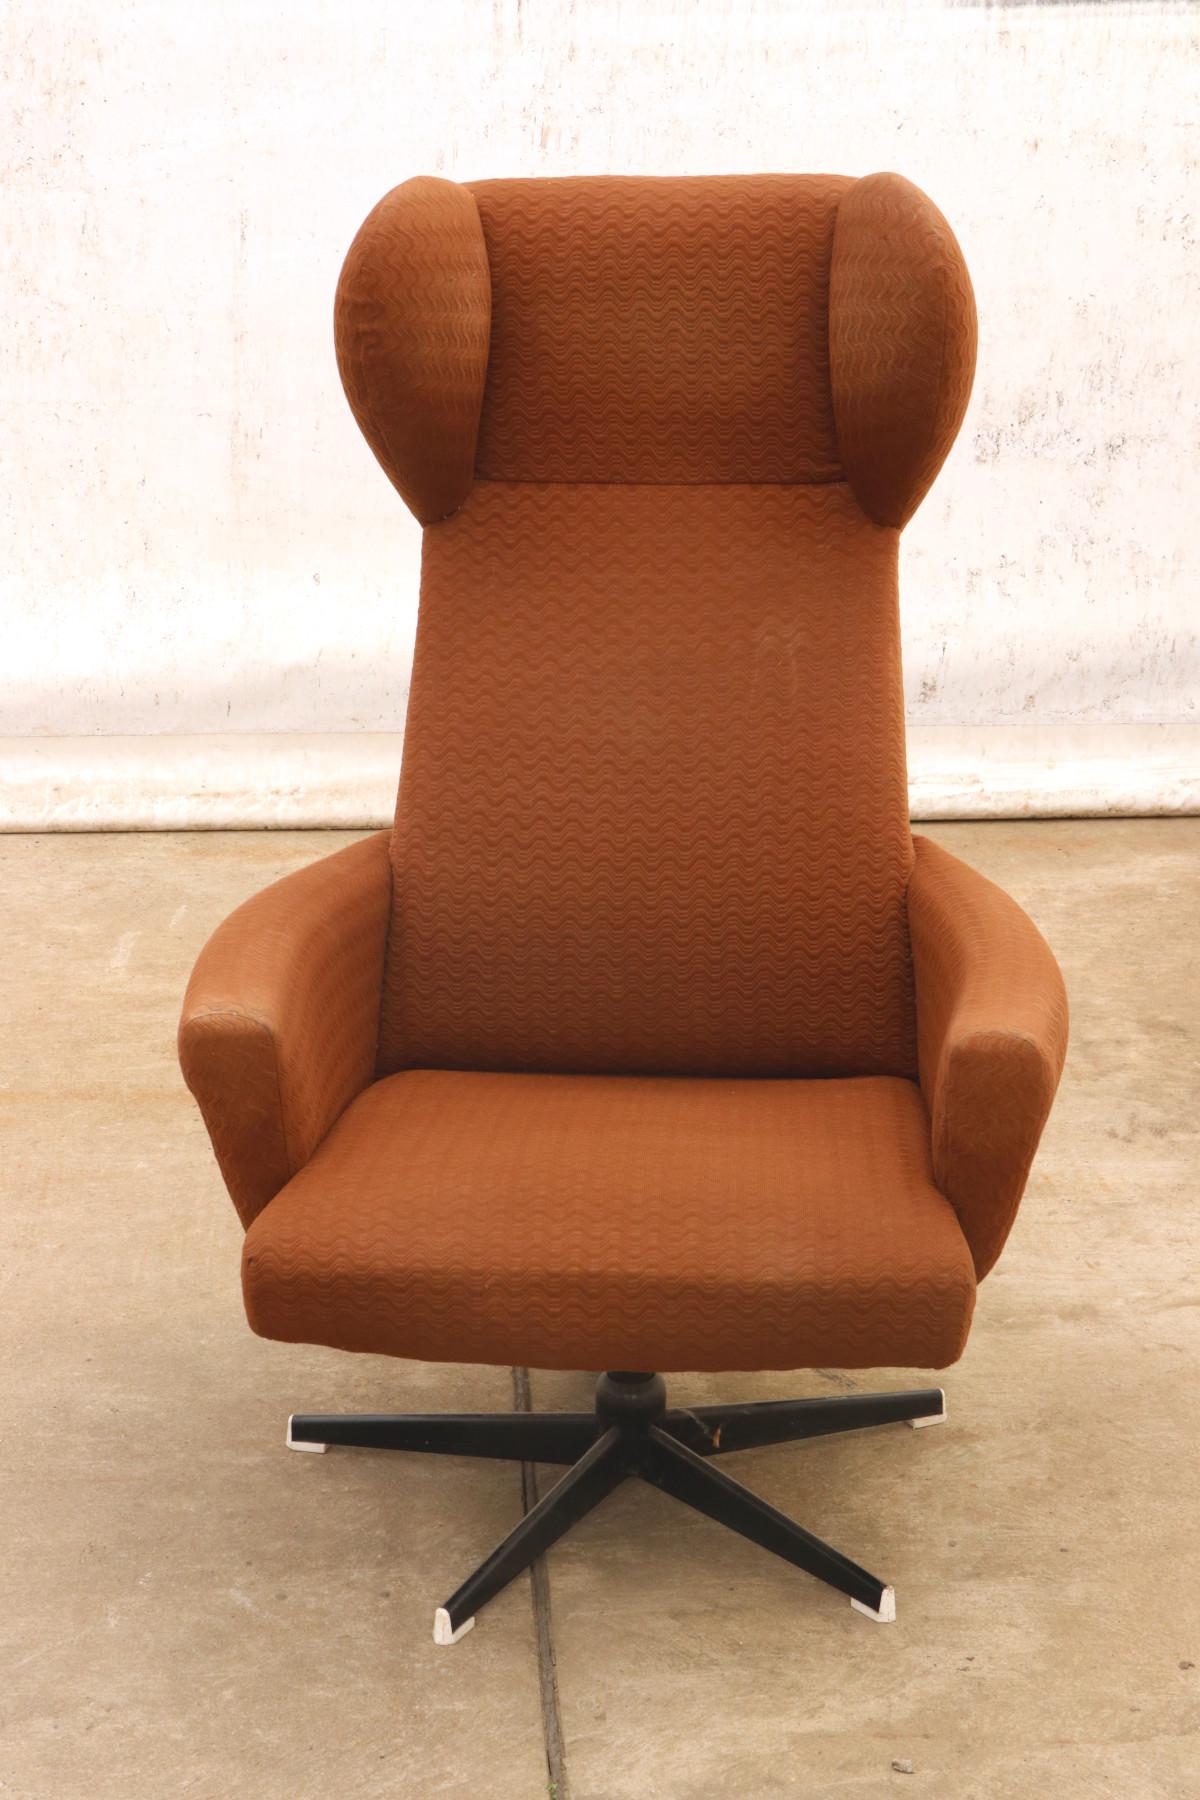 Dieser Sessel wurde von der Firma Drevotvar in der ehemaligen Tschechoslowakei in den 1970er Jahren hergestellt. Der Stuhl ist mit Stoff gepolstert. Die Beine sind aus Eisen gefertigt. Alles in sehr gutem Originalzustand, muss nur gereinigt